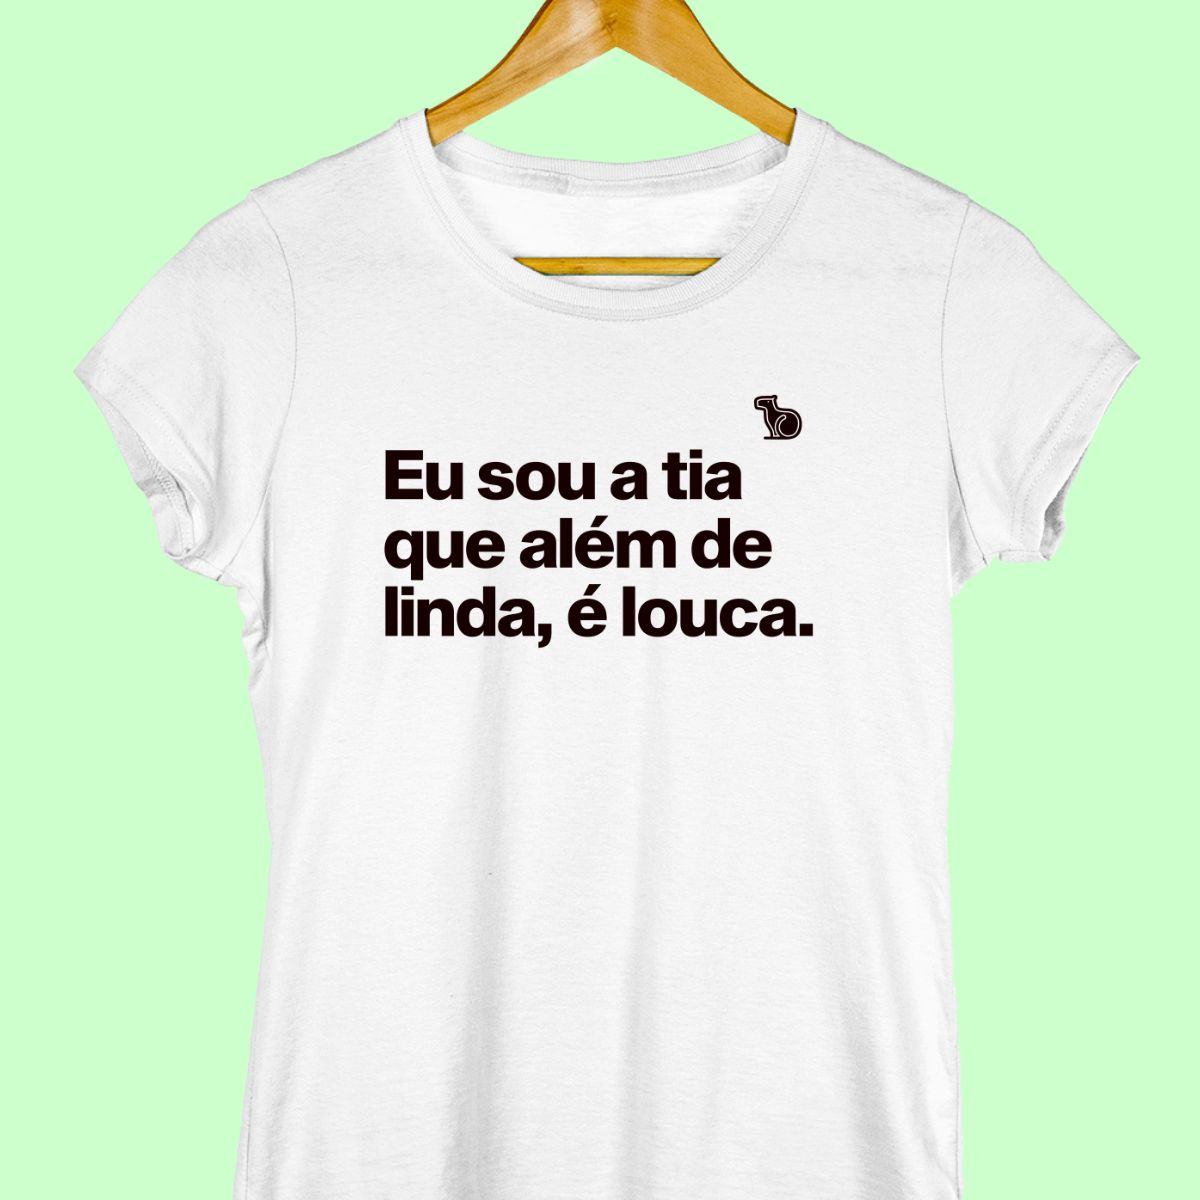 Camiseta com a frase "Eu sou a tia que além de linda, é louca." feminina branca.